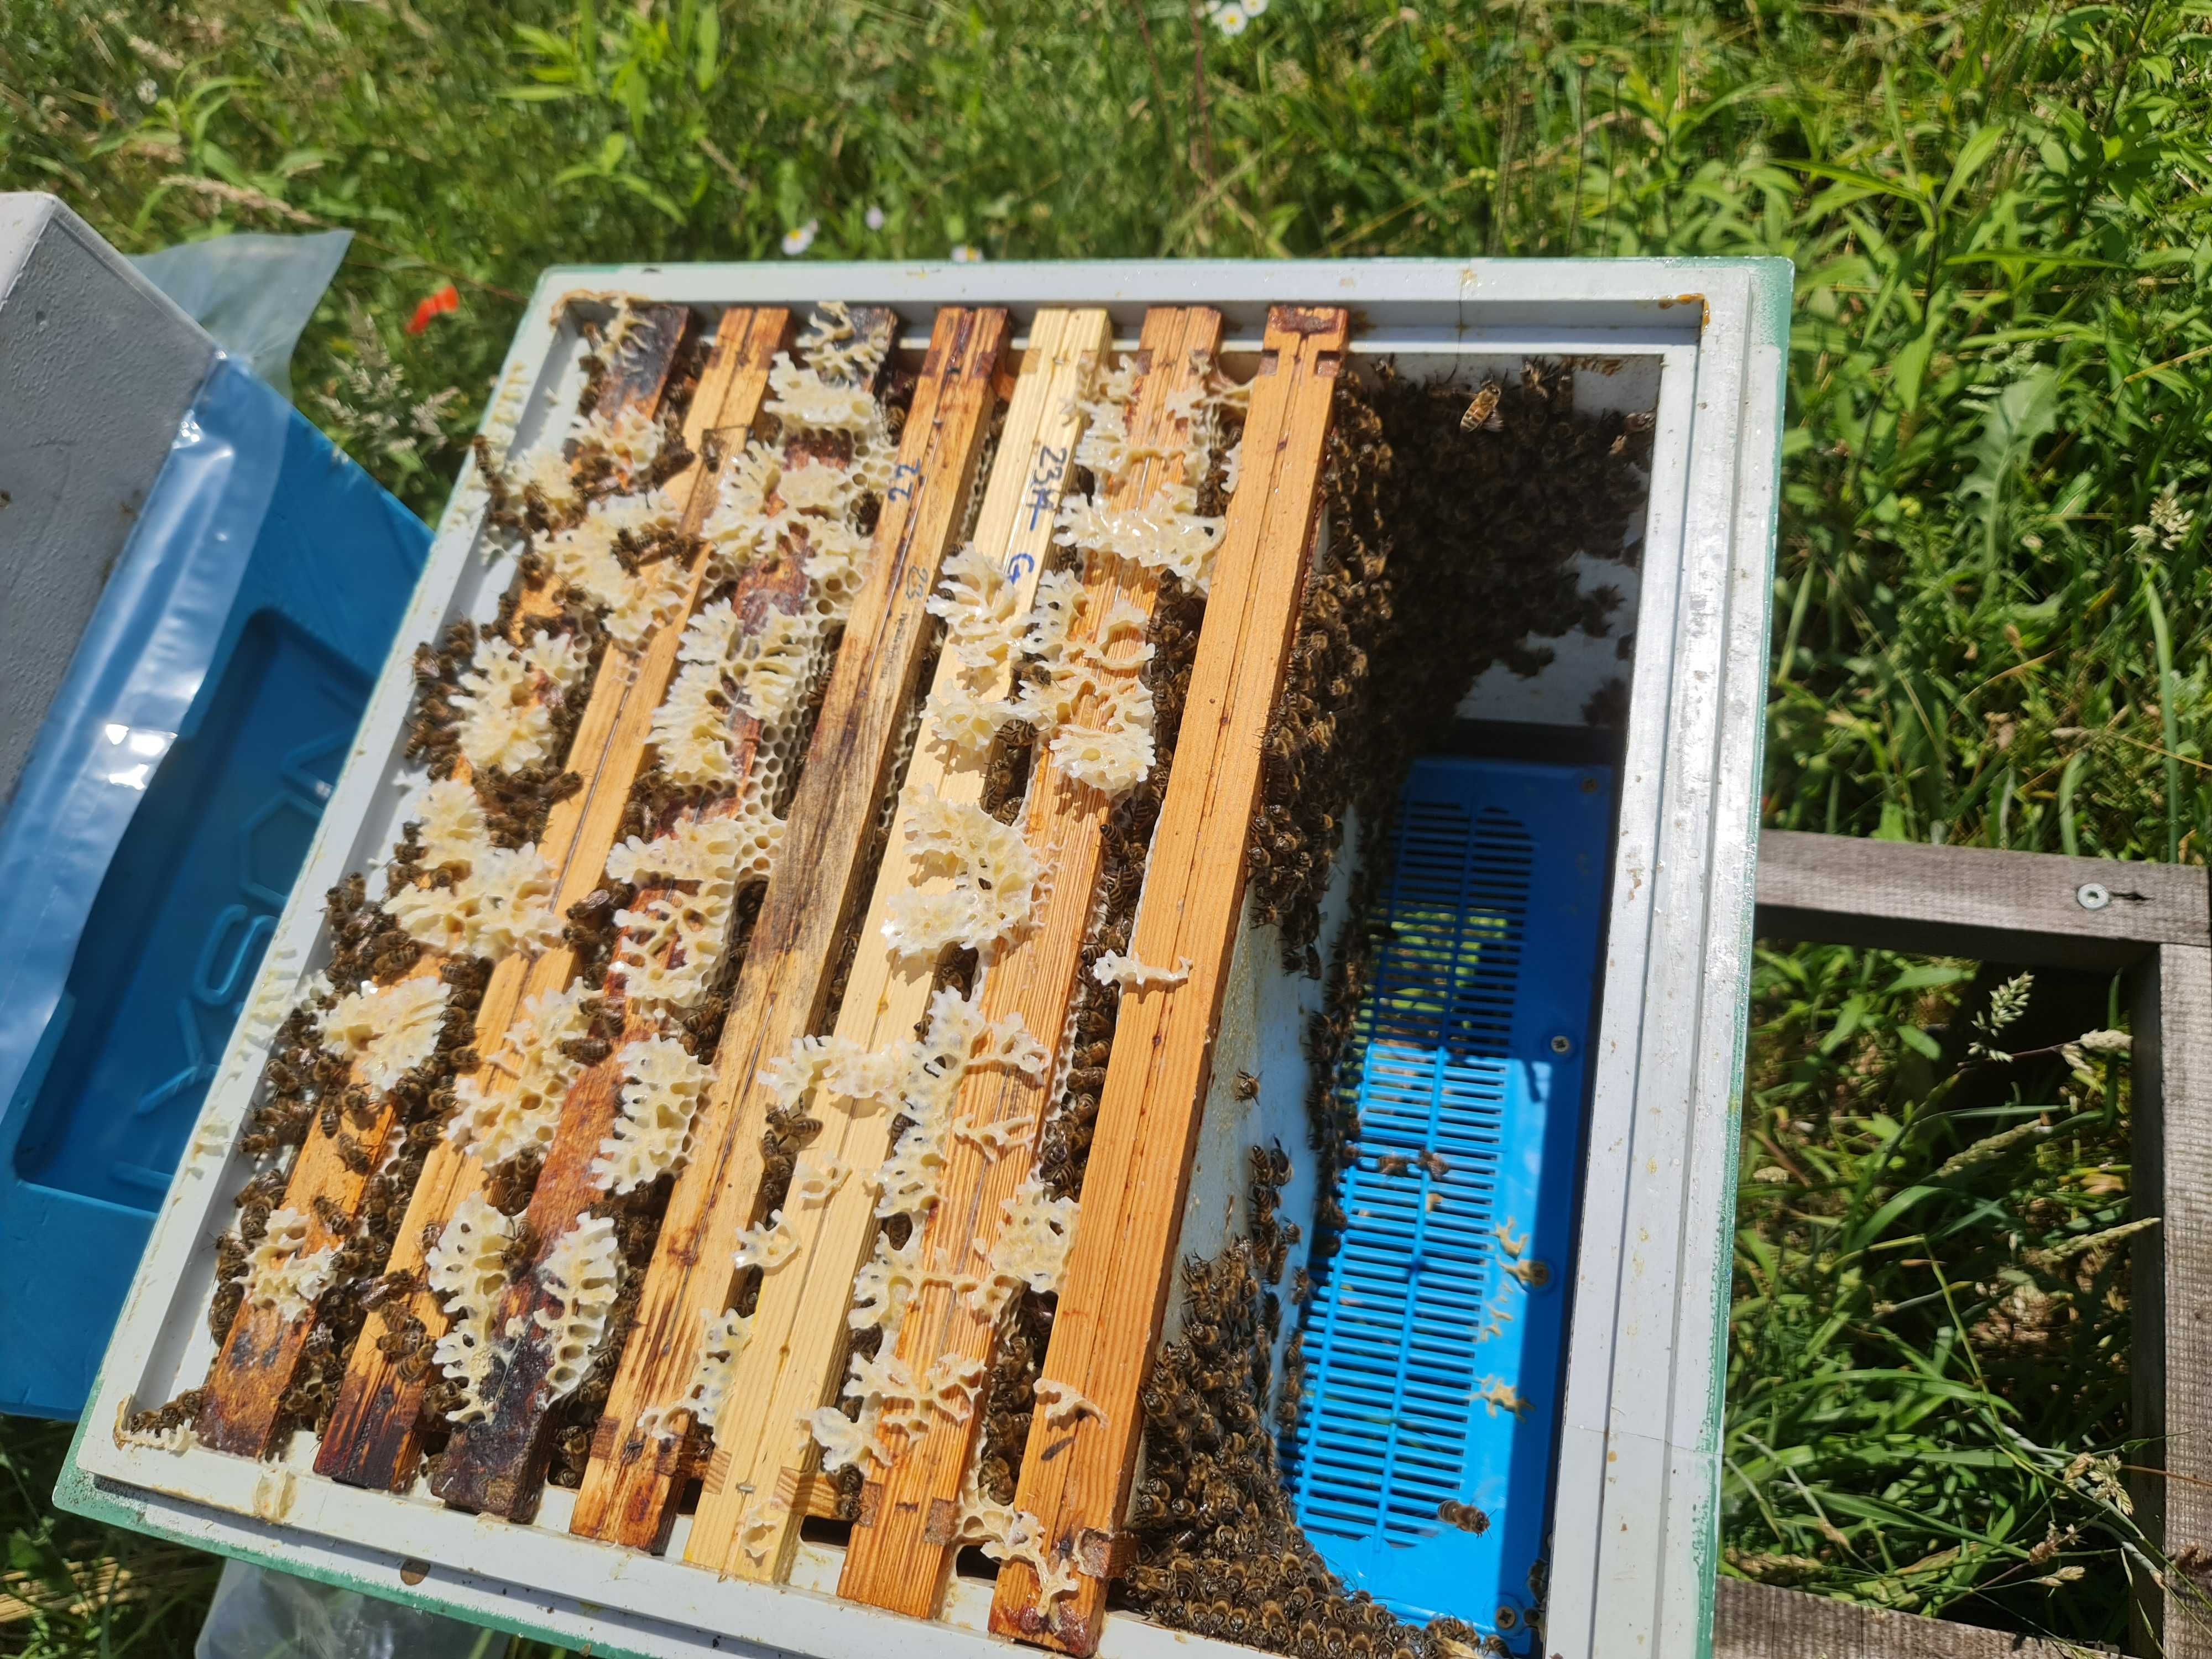 Silne odkłady pszczele - ramka wielkopolska